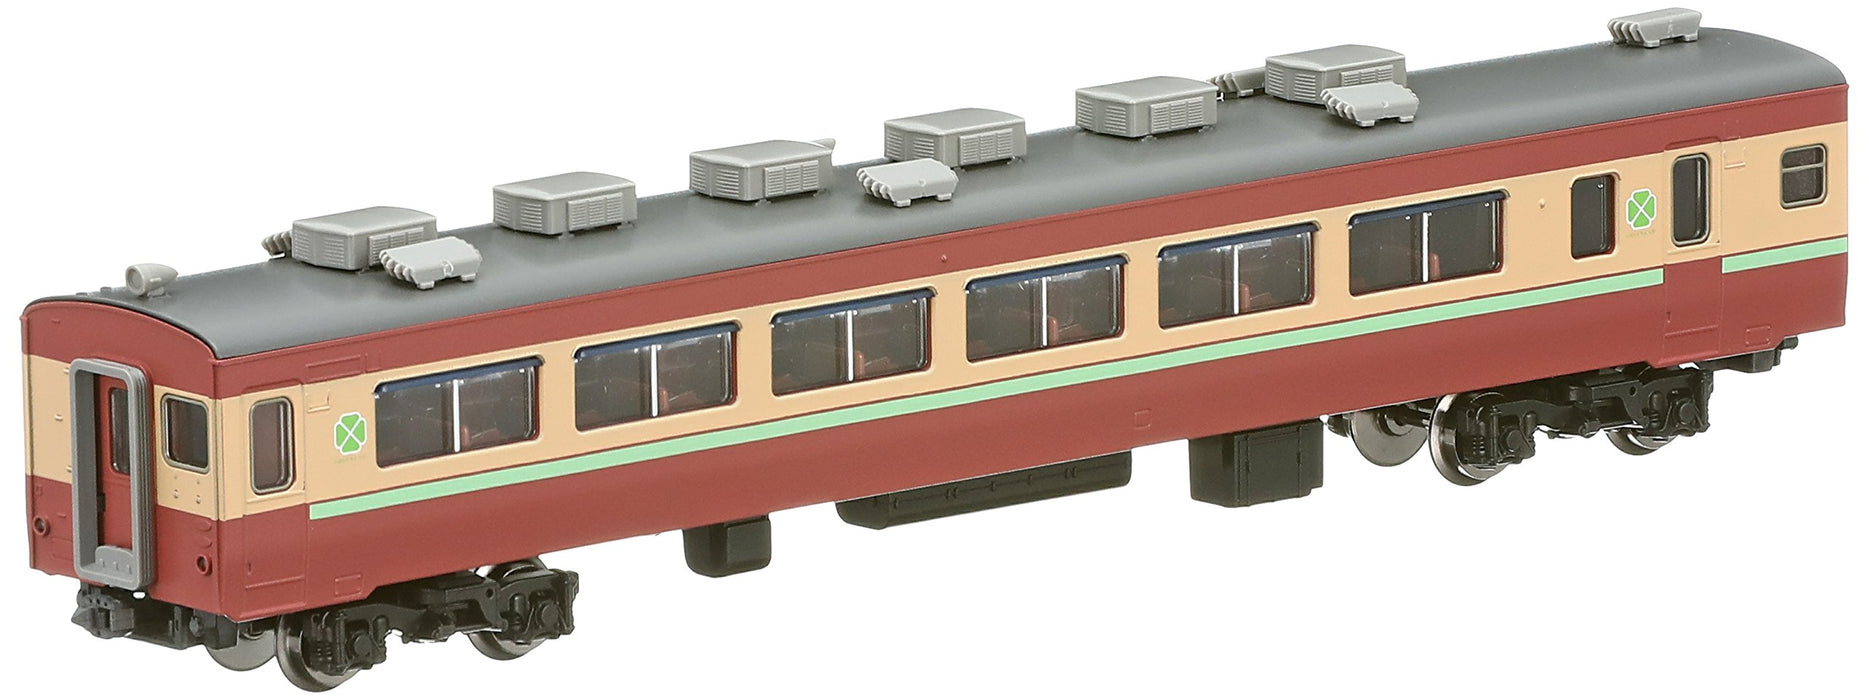 Tomytec Tomix N Gauge 455 Salo avec Obi - 8949 Train miniature pour chemin de fer